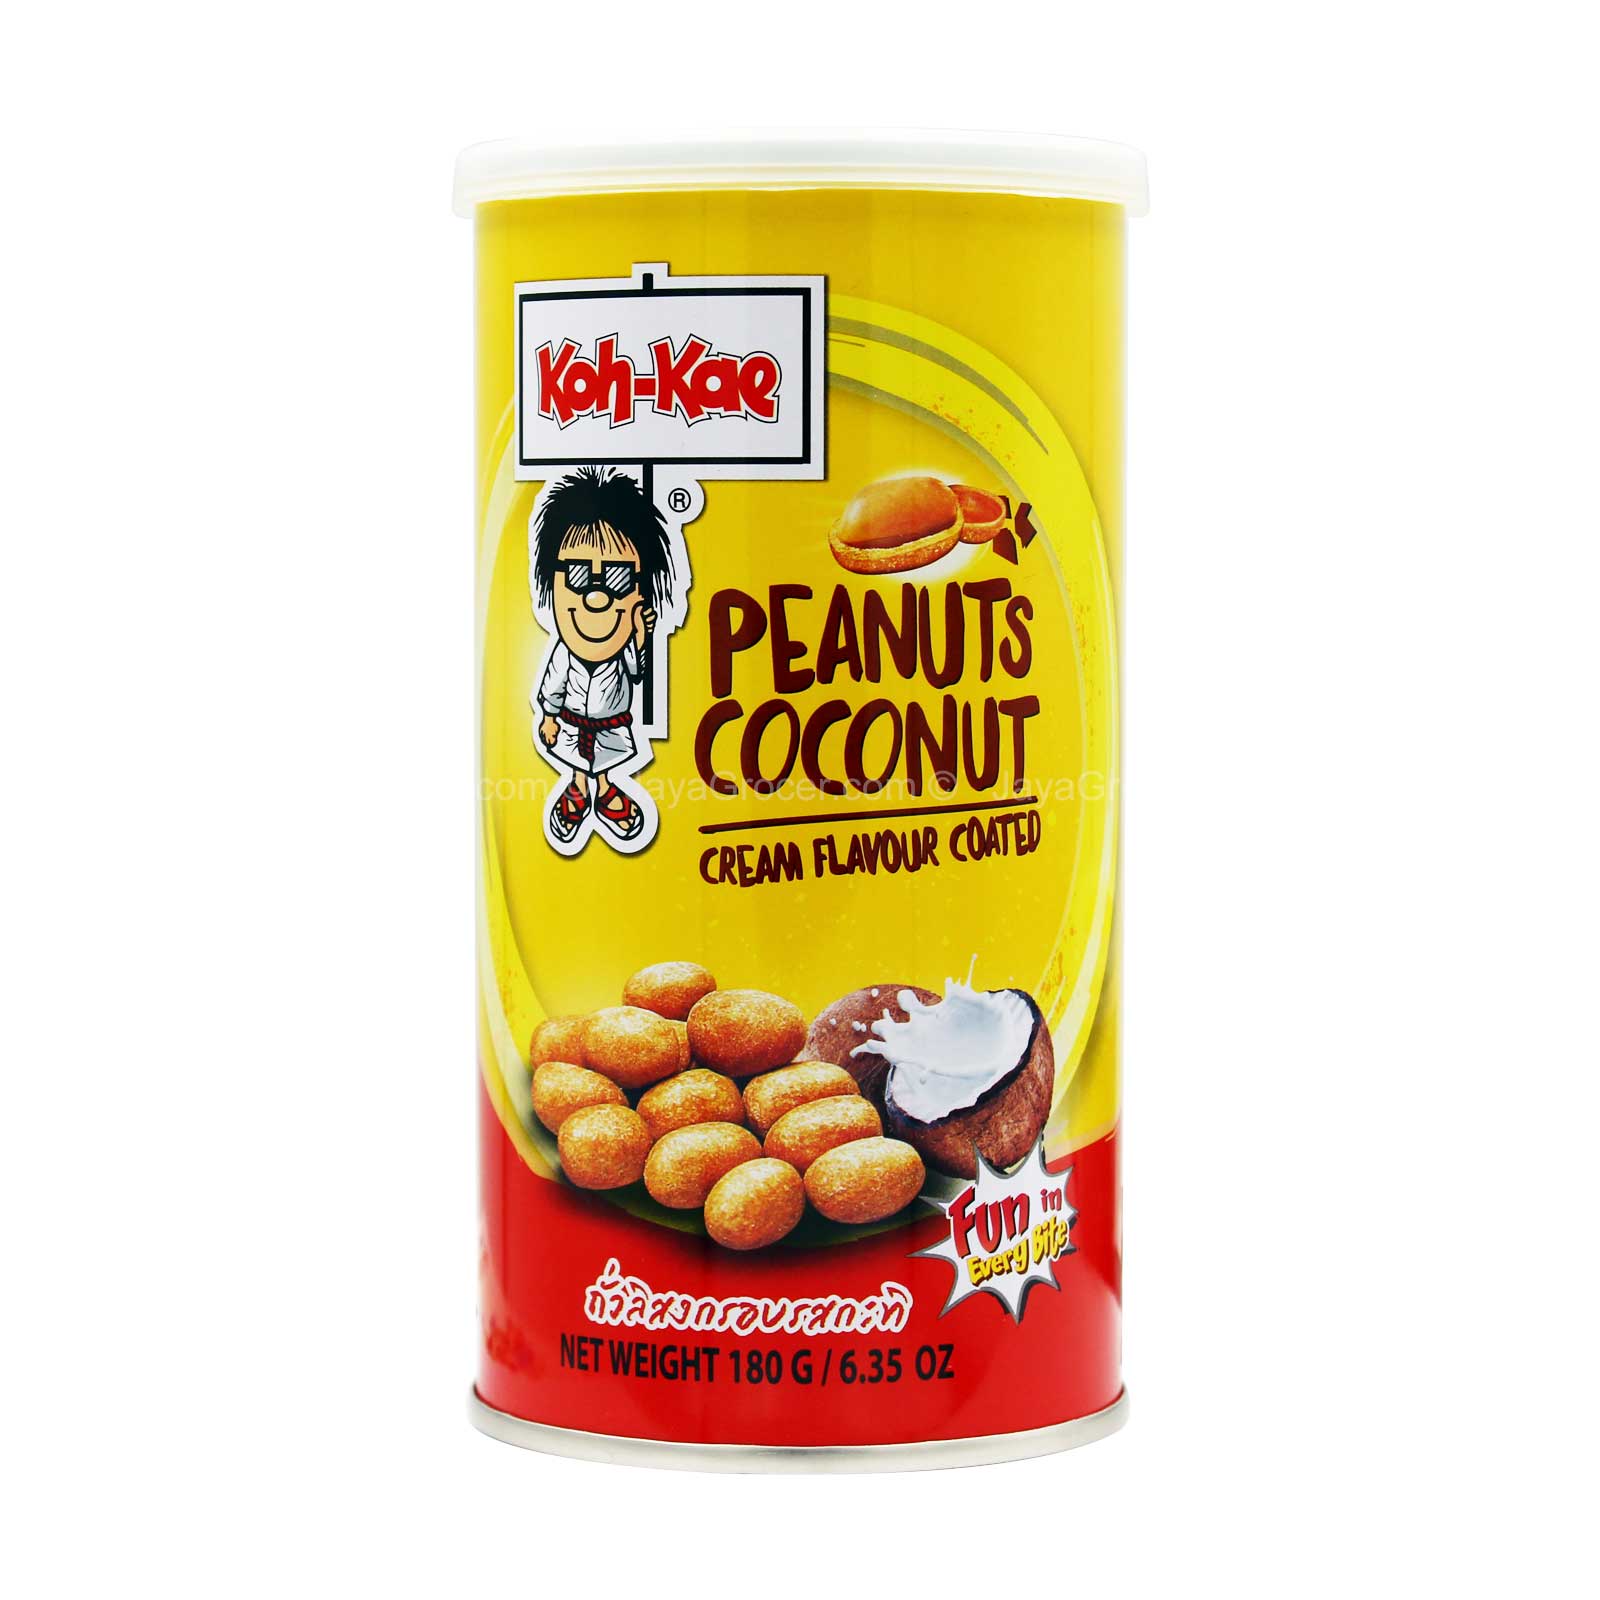 Koh-Kae Logo - Koh Kae Coconut Cream Flavour Coated Peanuts